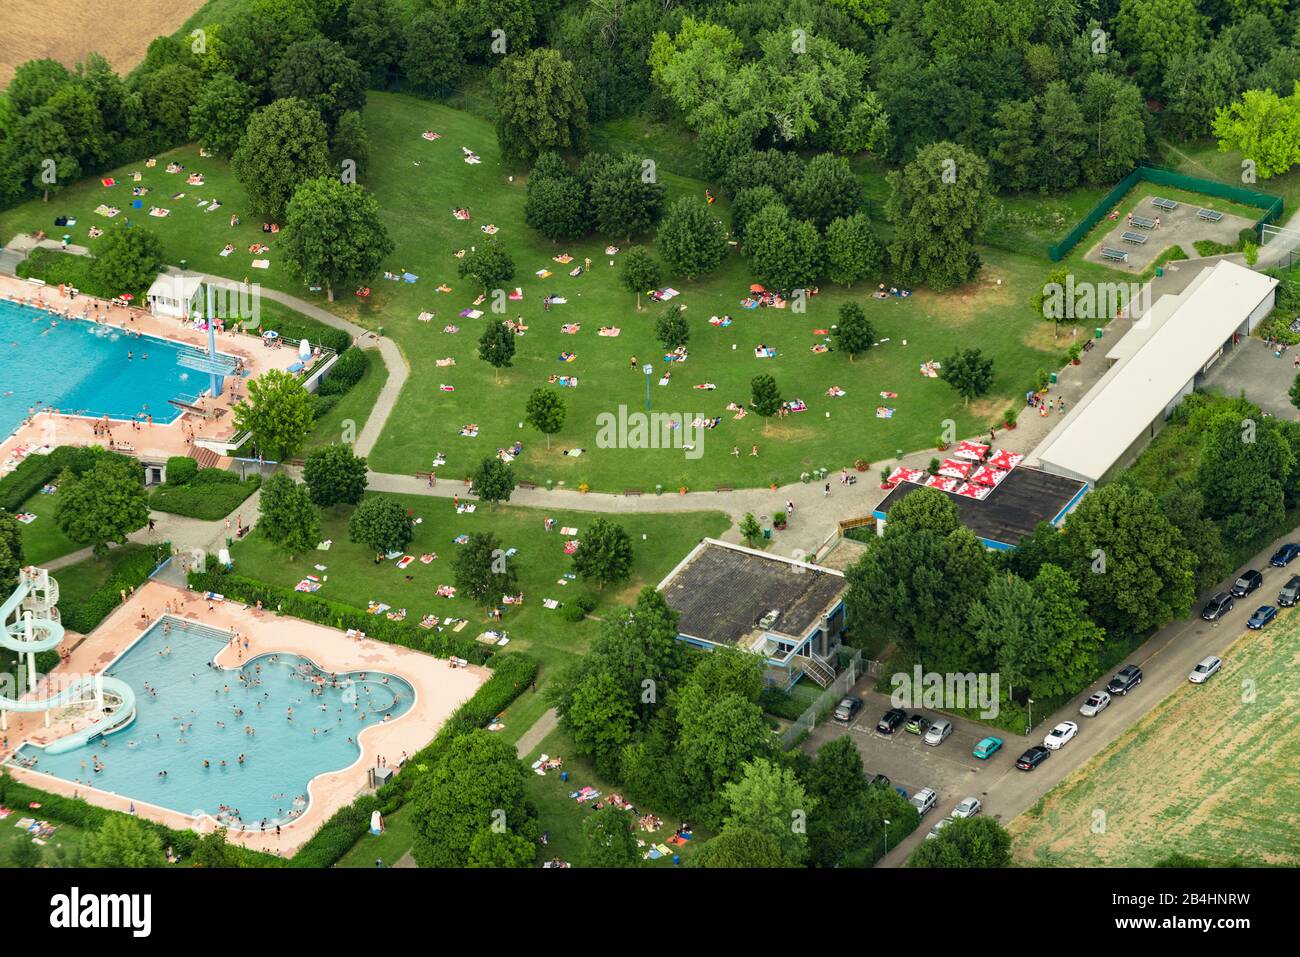 Luftaufnahme vom Freibad Asperg bei Ludwigsburg, Schwimmbbecken und Liegewiese Foto de stock